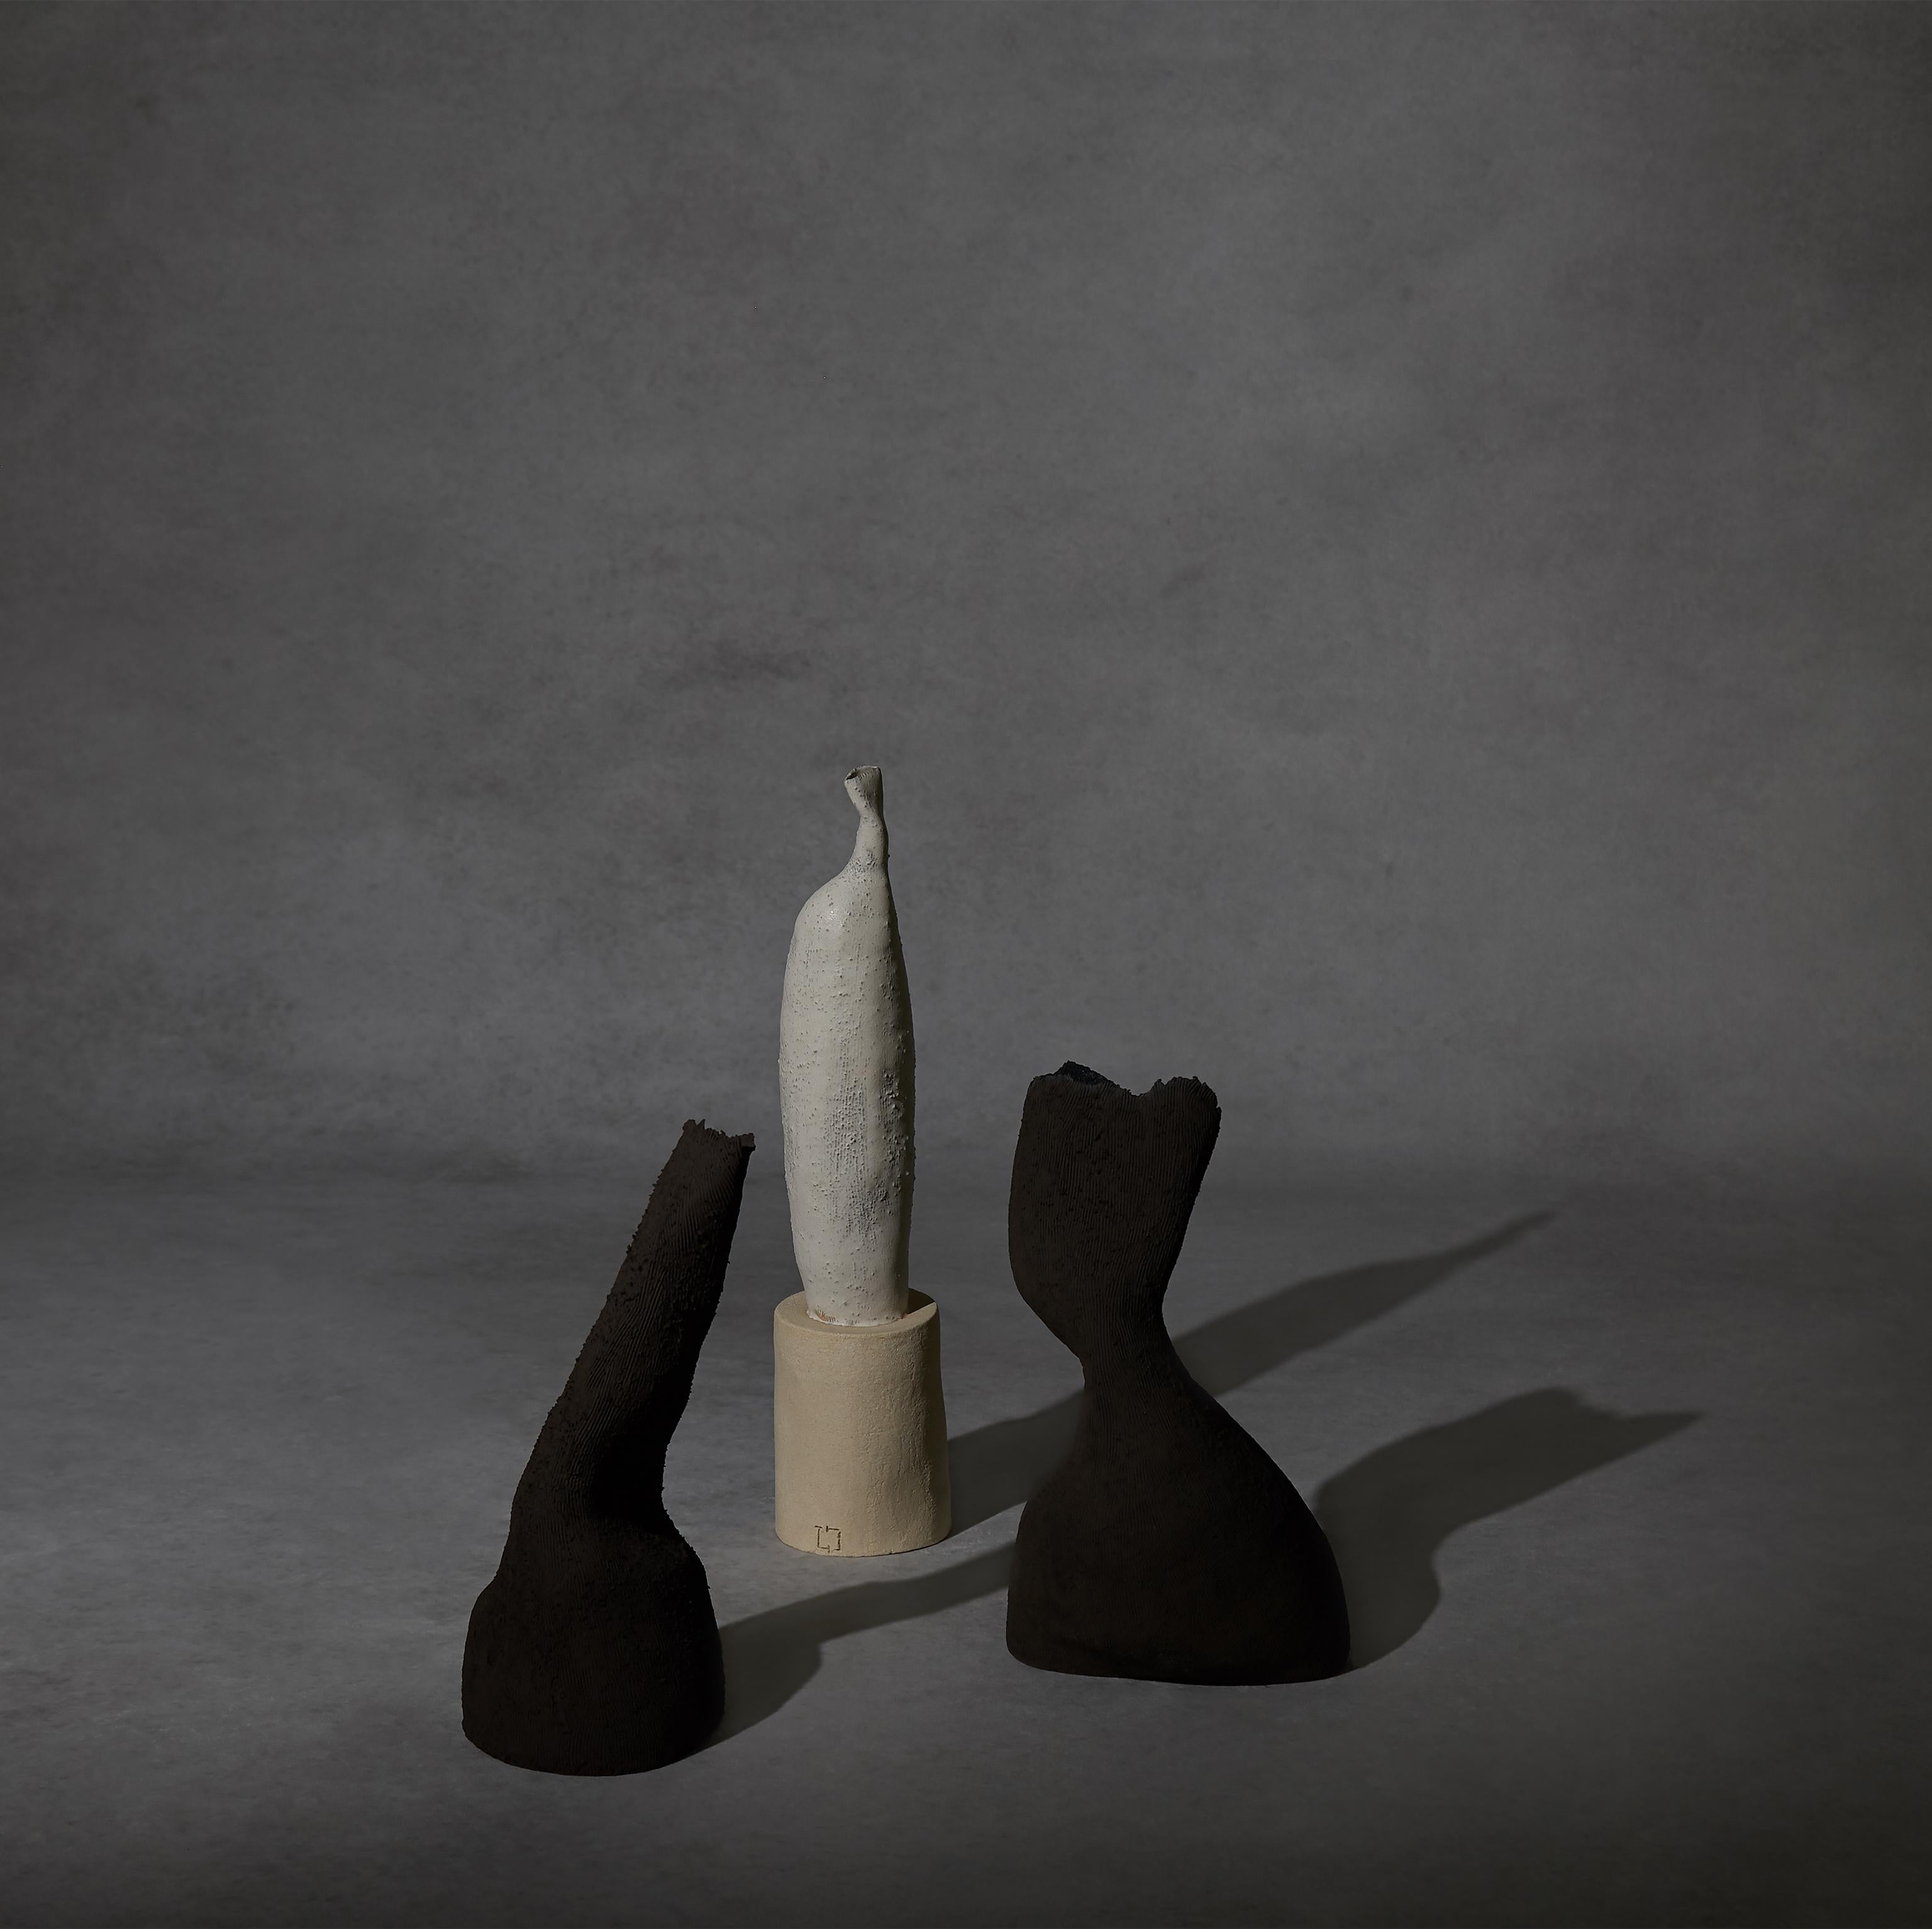 European 21st Century Handmade Black Stoneware Vase Sculpture crafted by Ludmilla Balkis